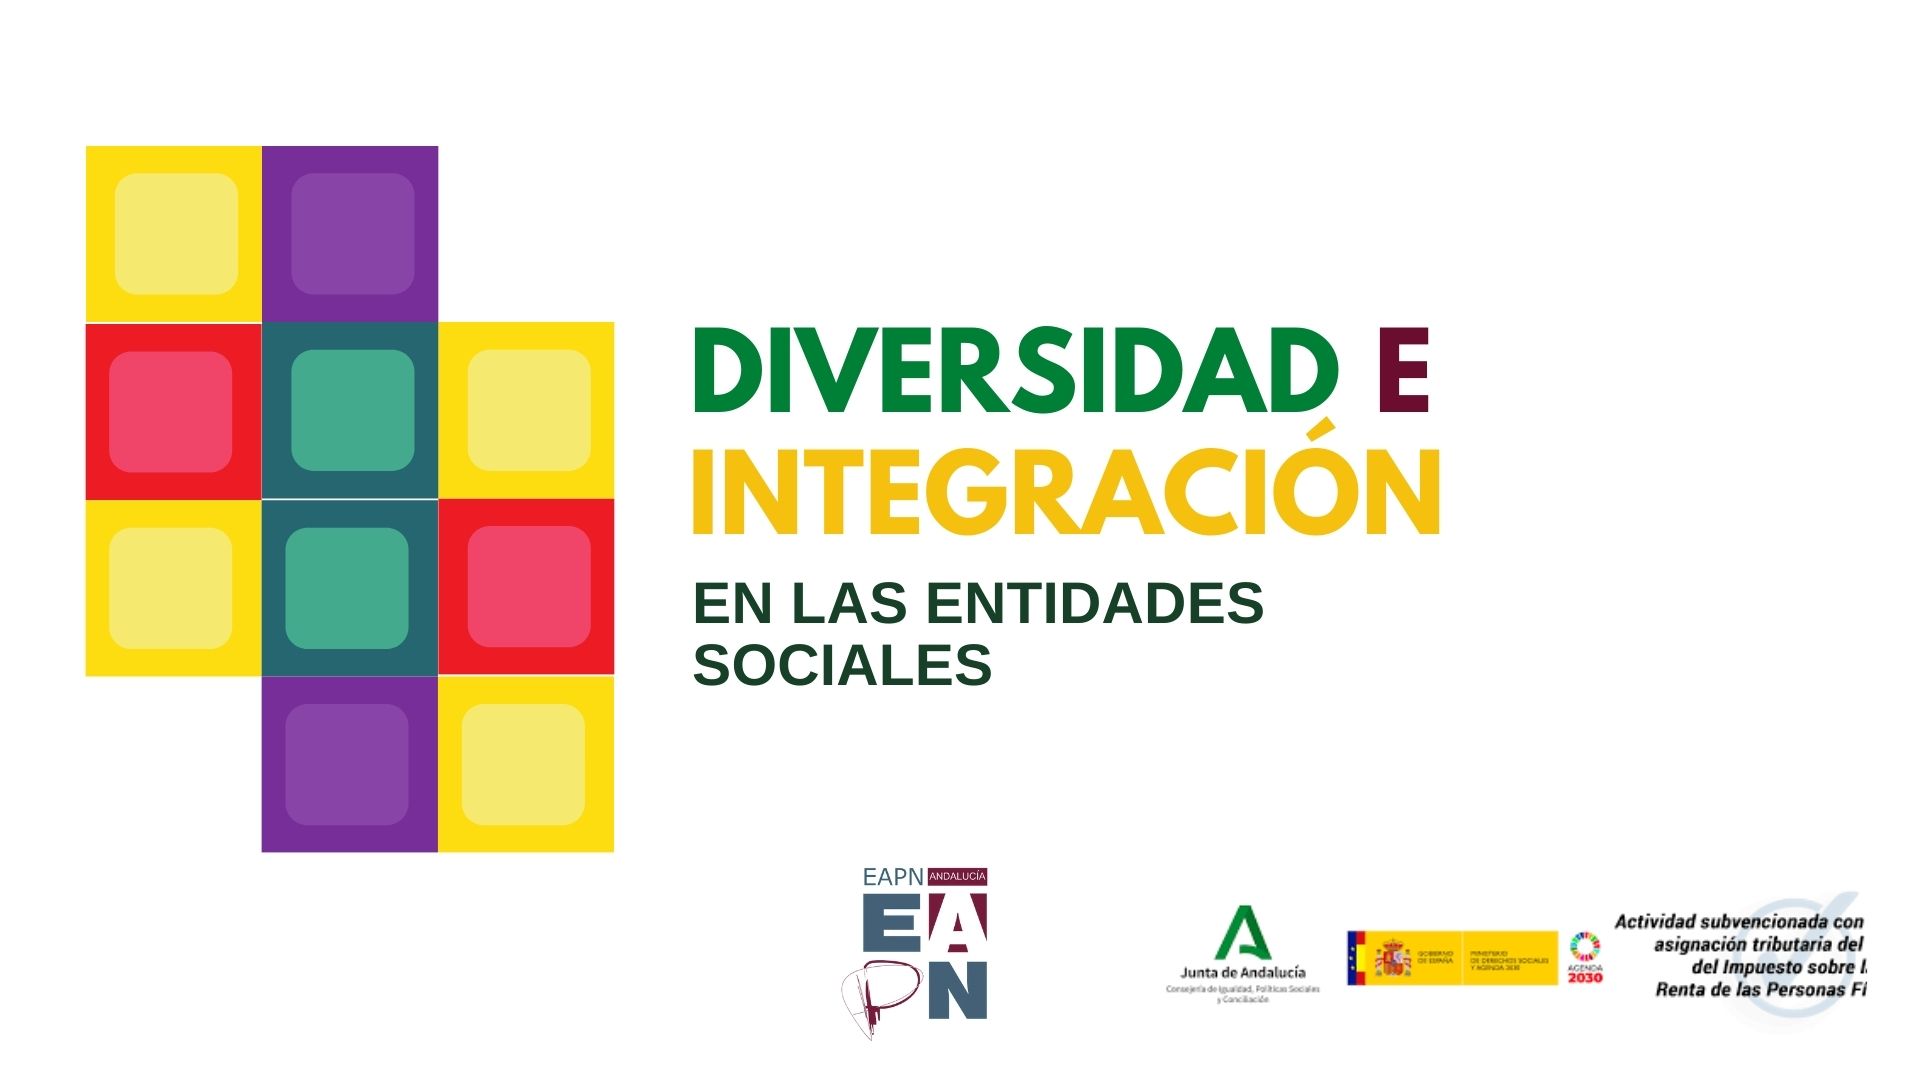 Diversidad e integración en las entidades sociales